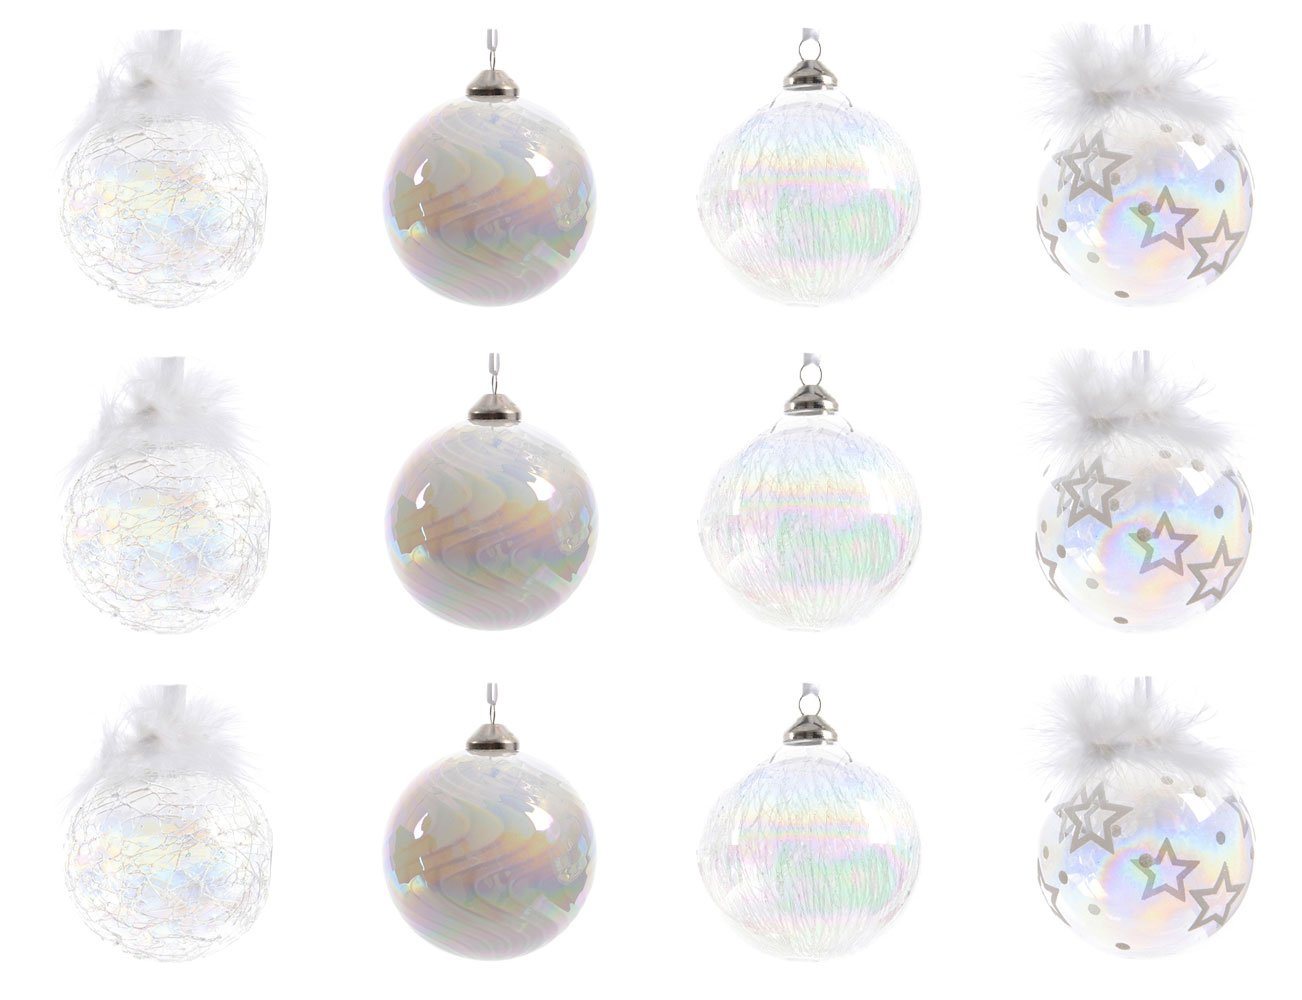 Decoris season decorations Weihnachtsbaumkugel, Weihnachtskugeln Glas mit Motiv 8cm klar / weiß / irisierend, 12er Set von Decoris season decorations